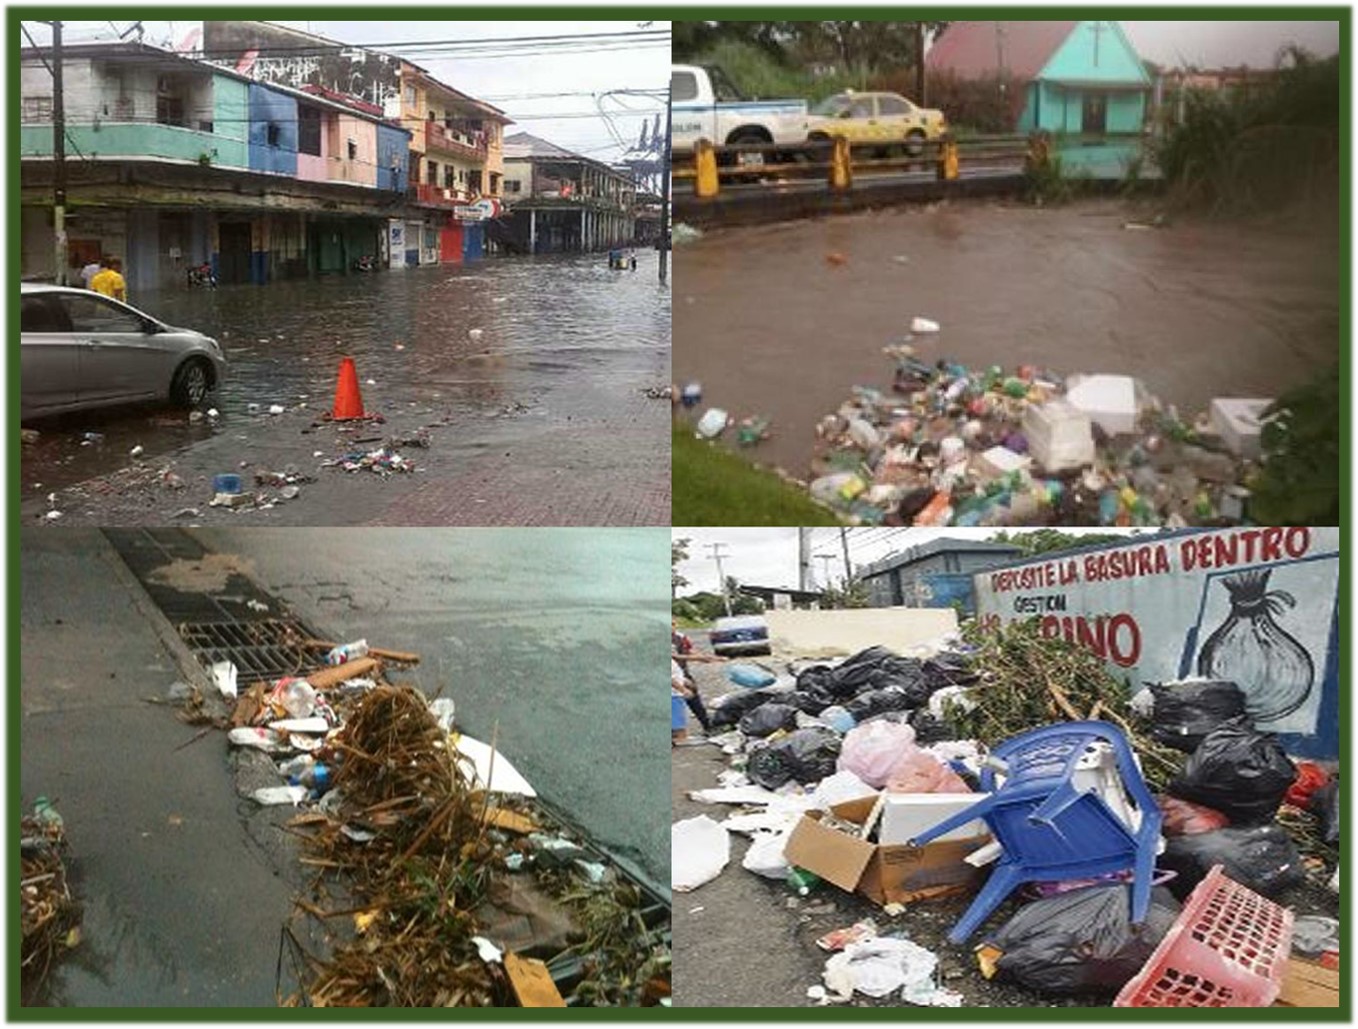 Hacia un Panamá sin contaminación: así no es posible!